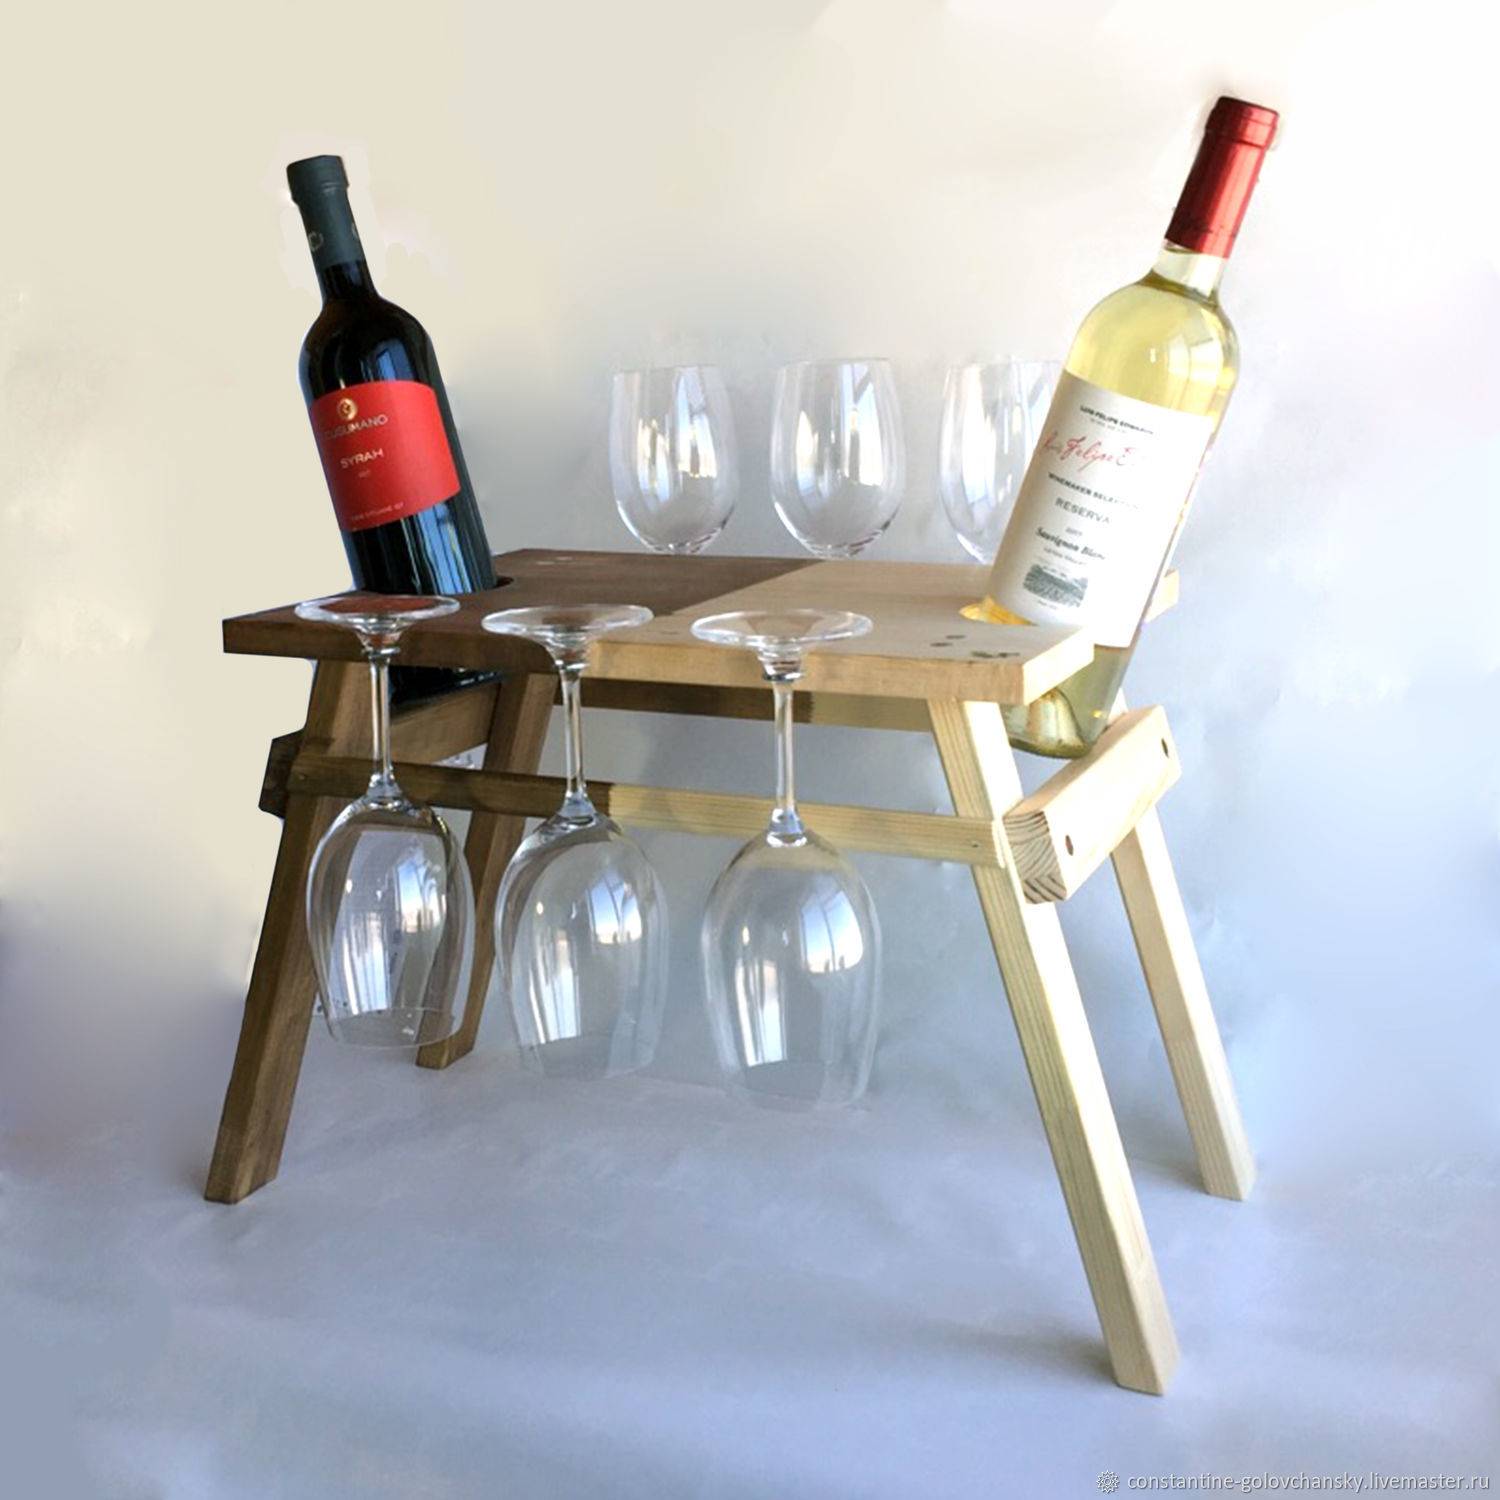 Как выбрать винный стеллаж для дома по типу конструкции и материалу, как изготовить полку из дерева для хранения бутылок с вином своими руками?